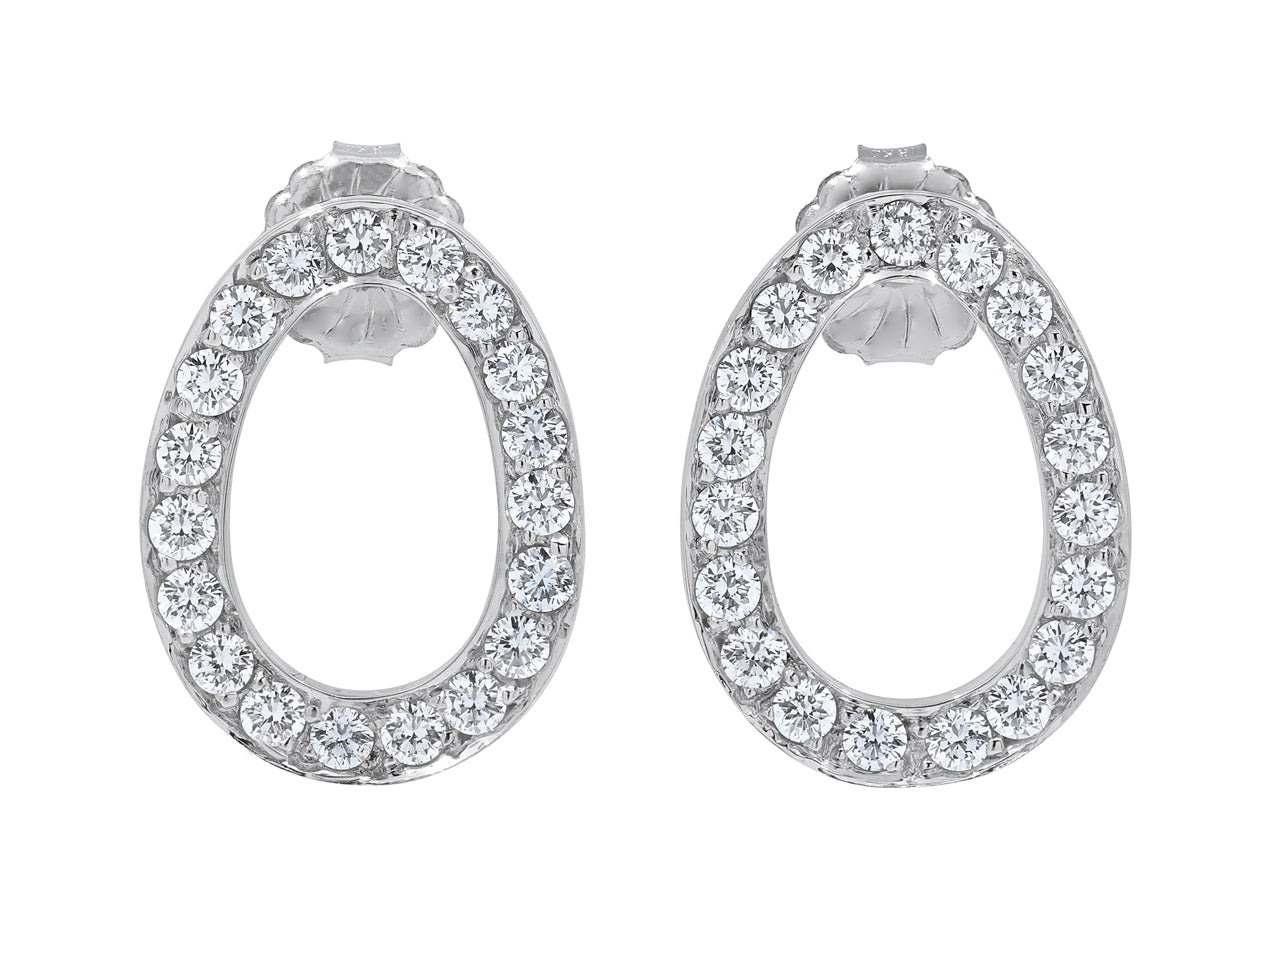 Beladora 'Bespoke' Oval Diamond Earrings in 18K White Gold